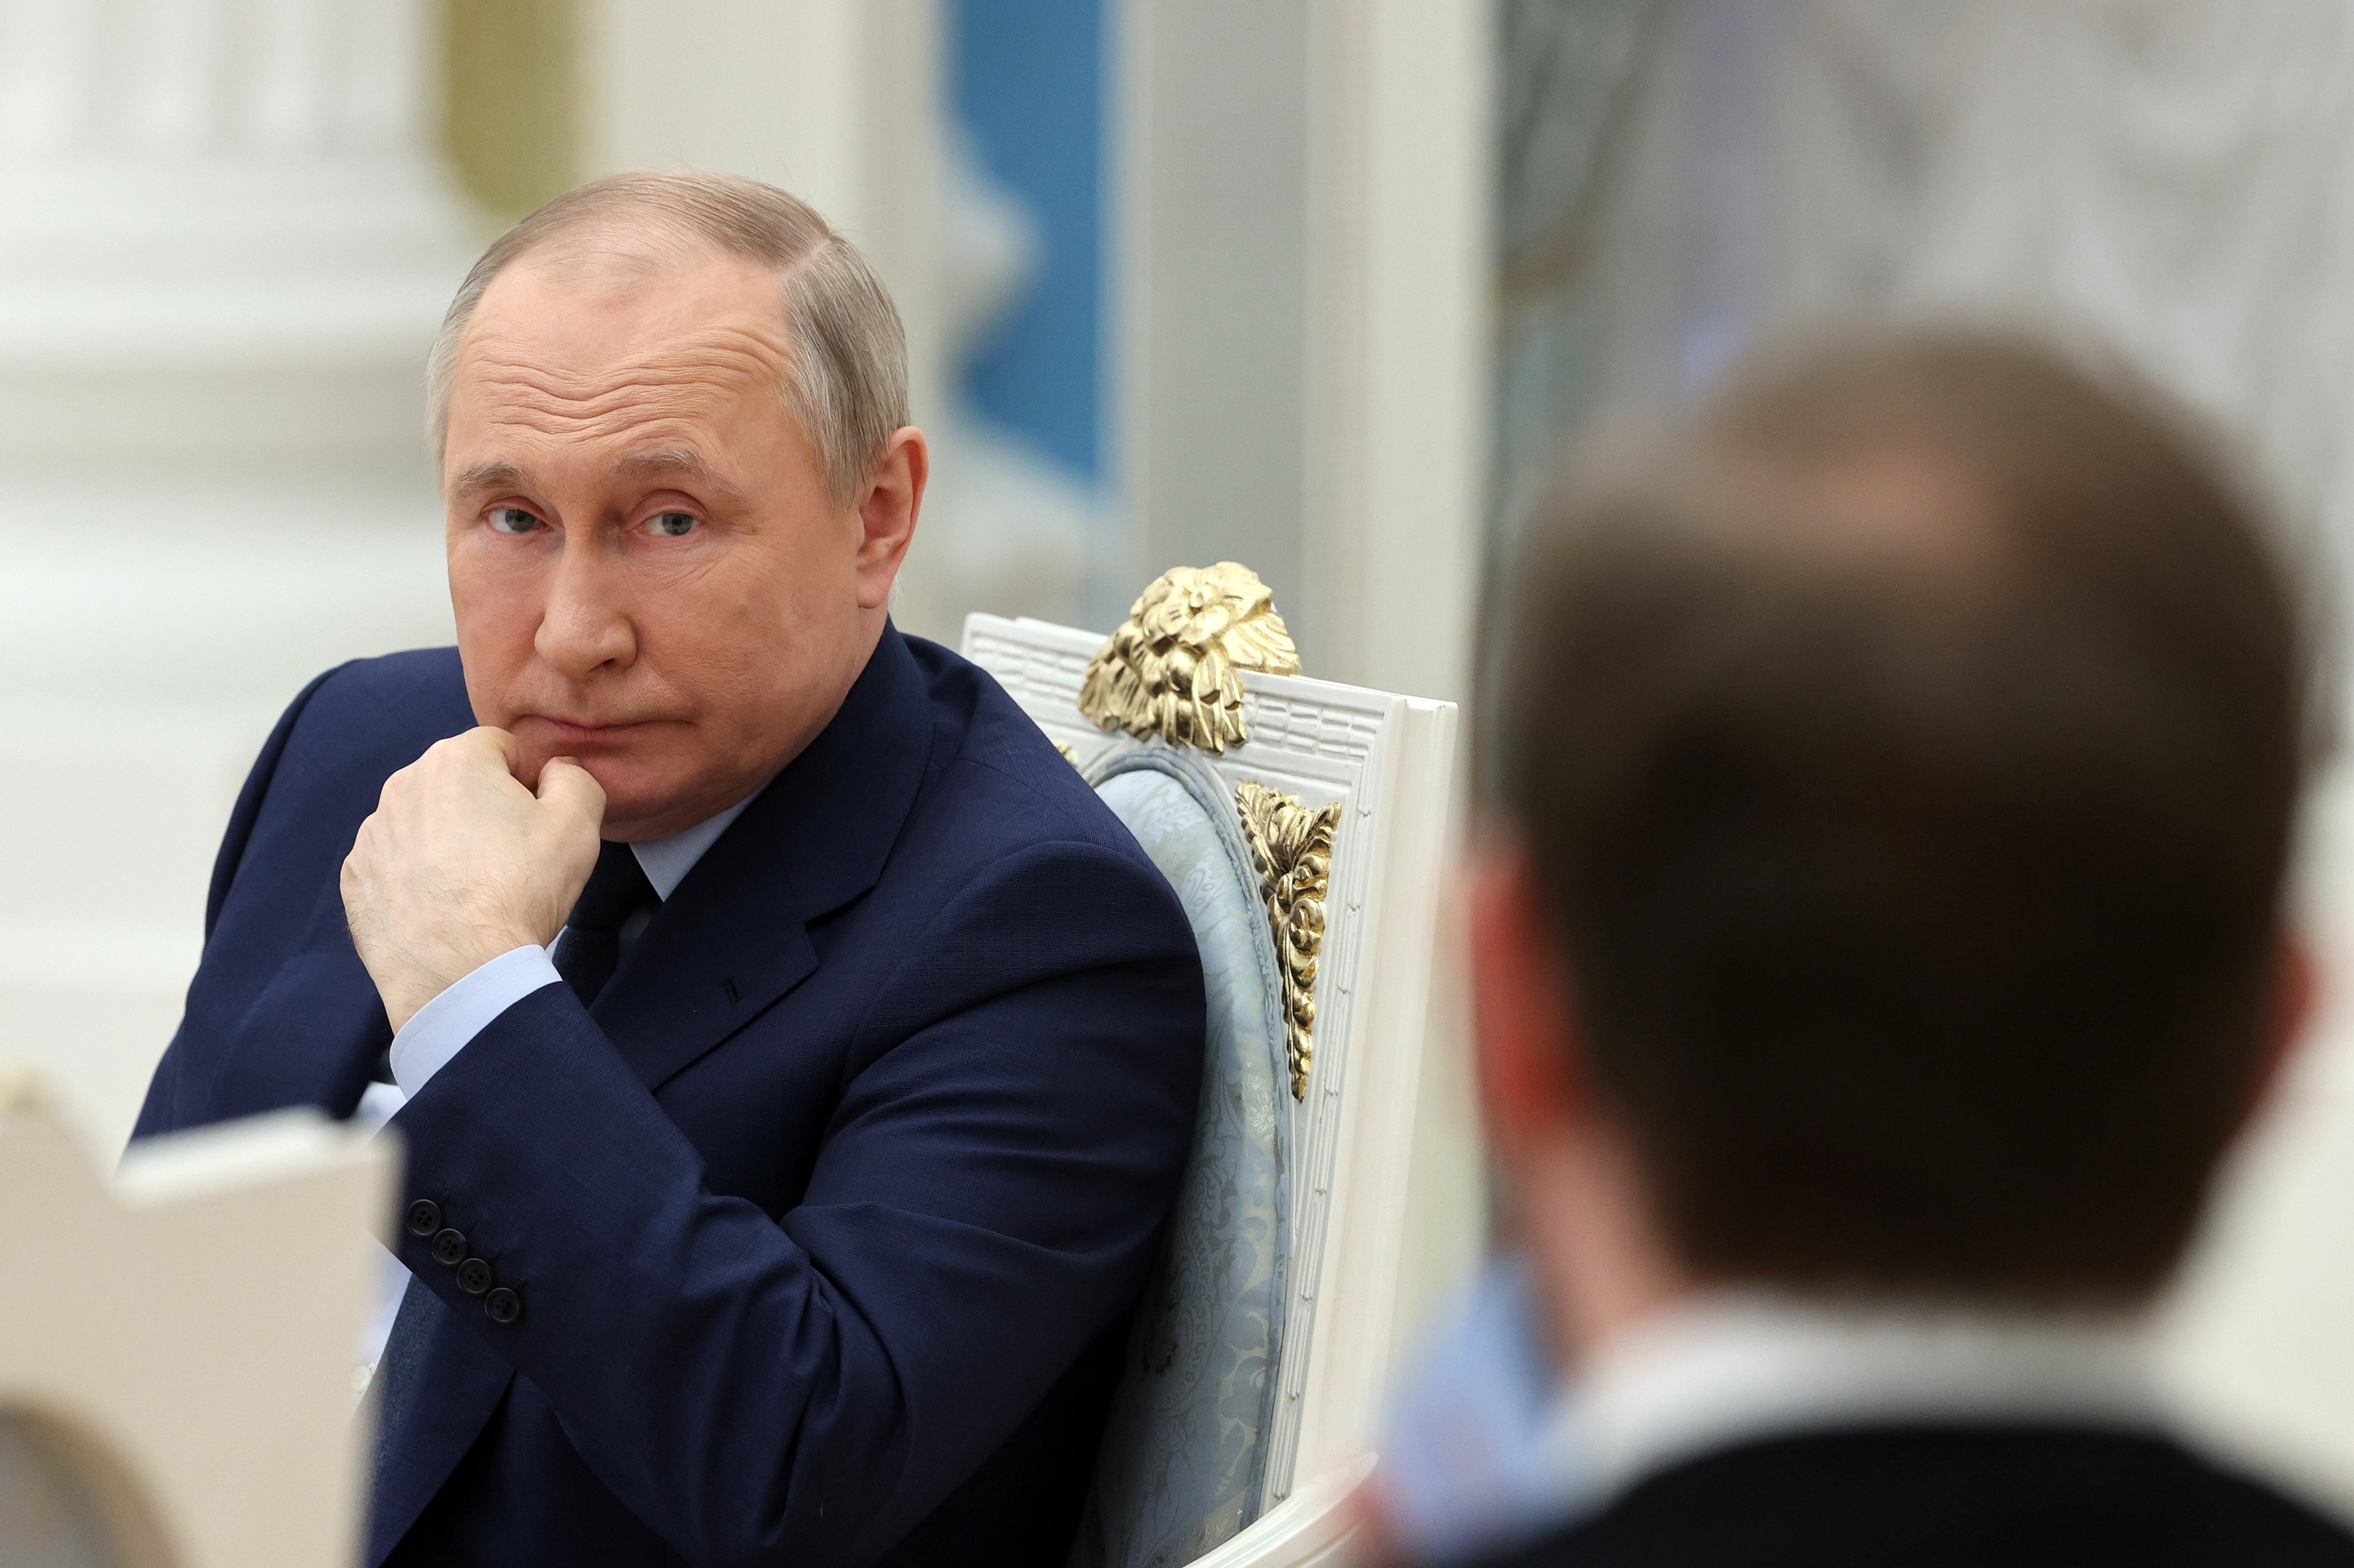 El apoyo de los oligarcas a Putin empieza a derrumbarse por los costes económicos